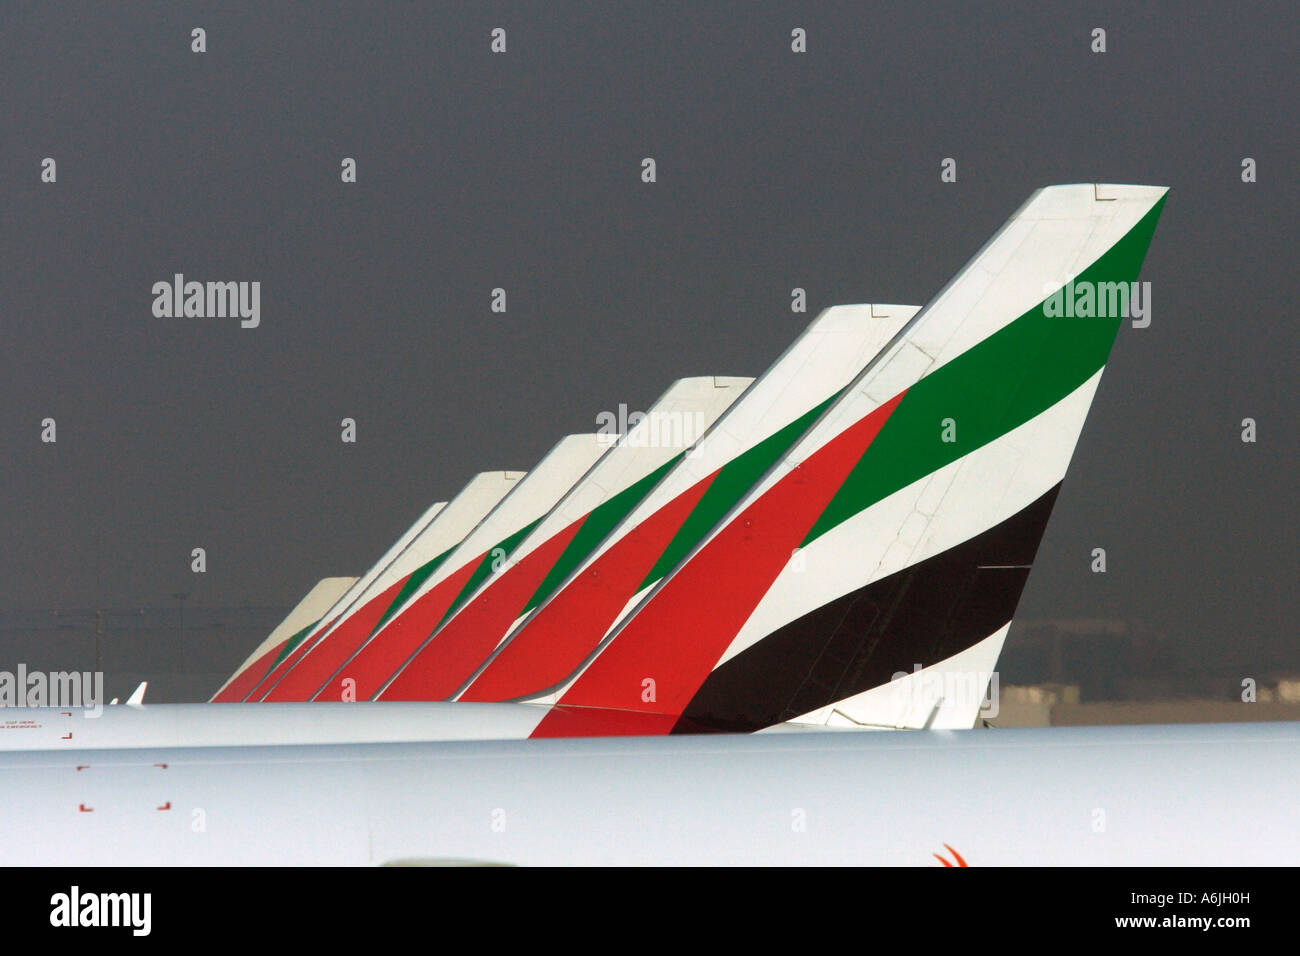 Les ailettes verticales des avions de la compagnie aérienne Emirates à l'Aéroport International de Dubaï, Emirats Arabes Unis Banque D'Images